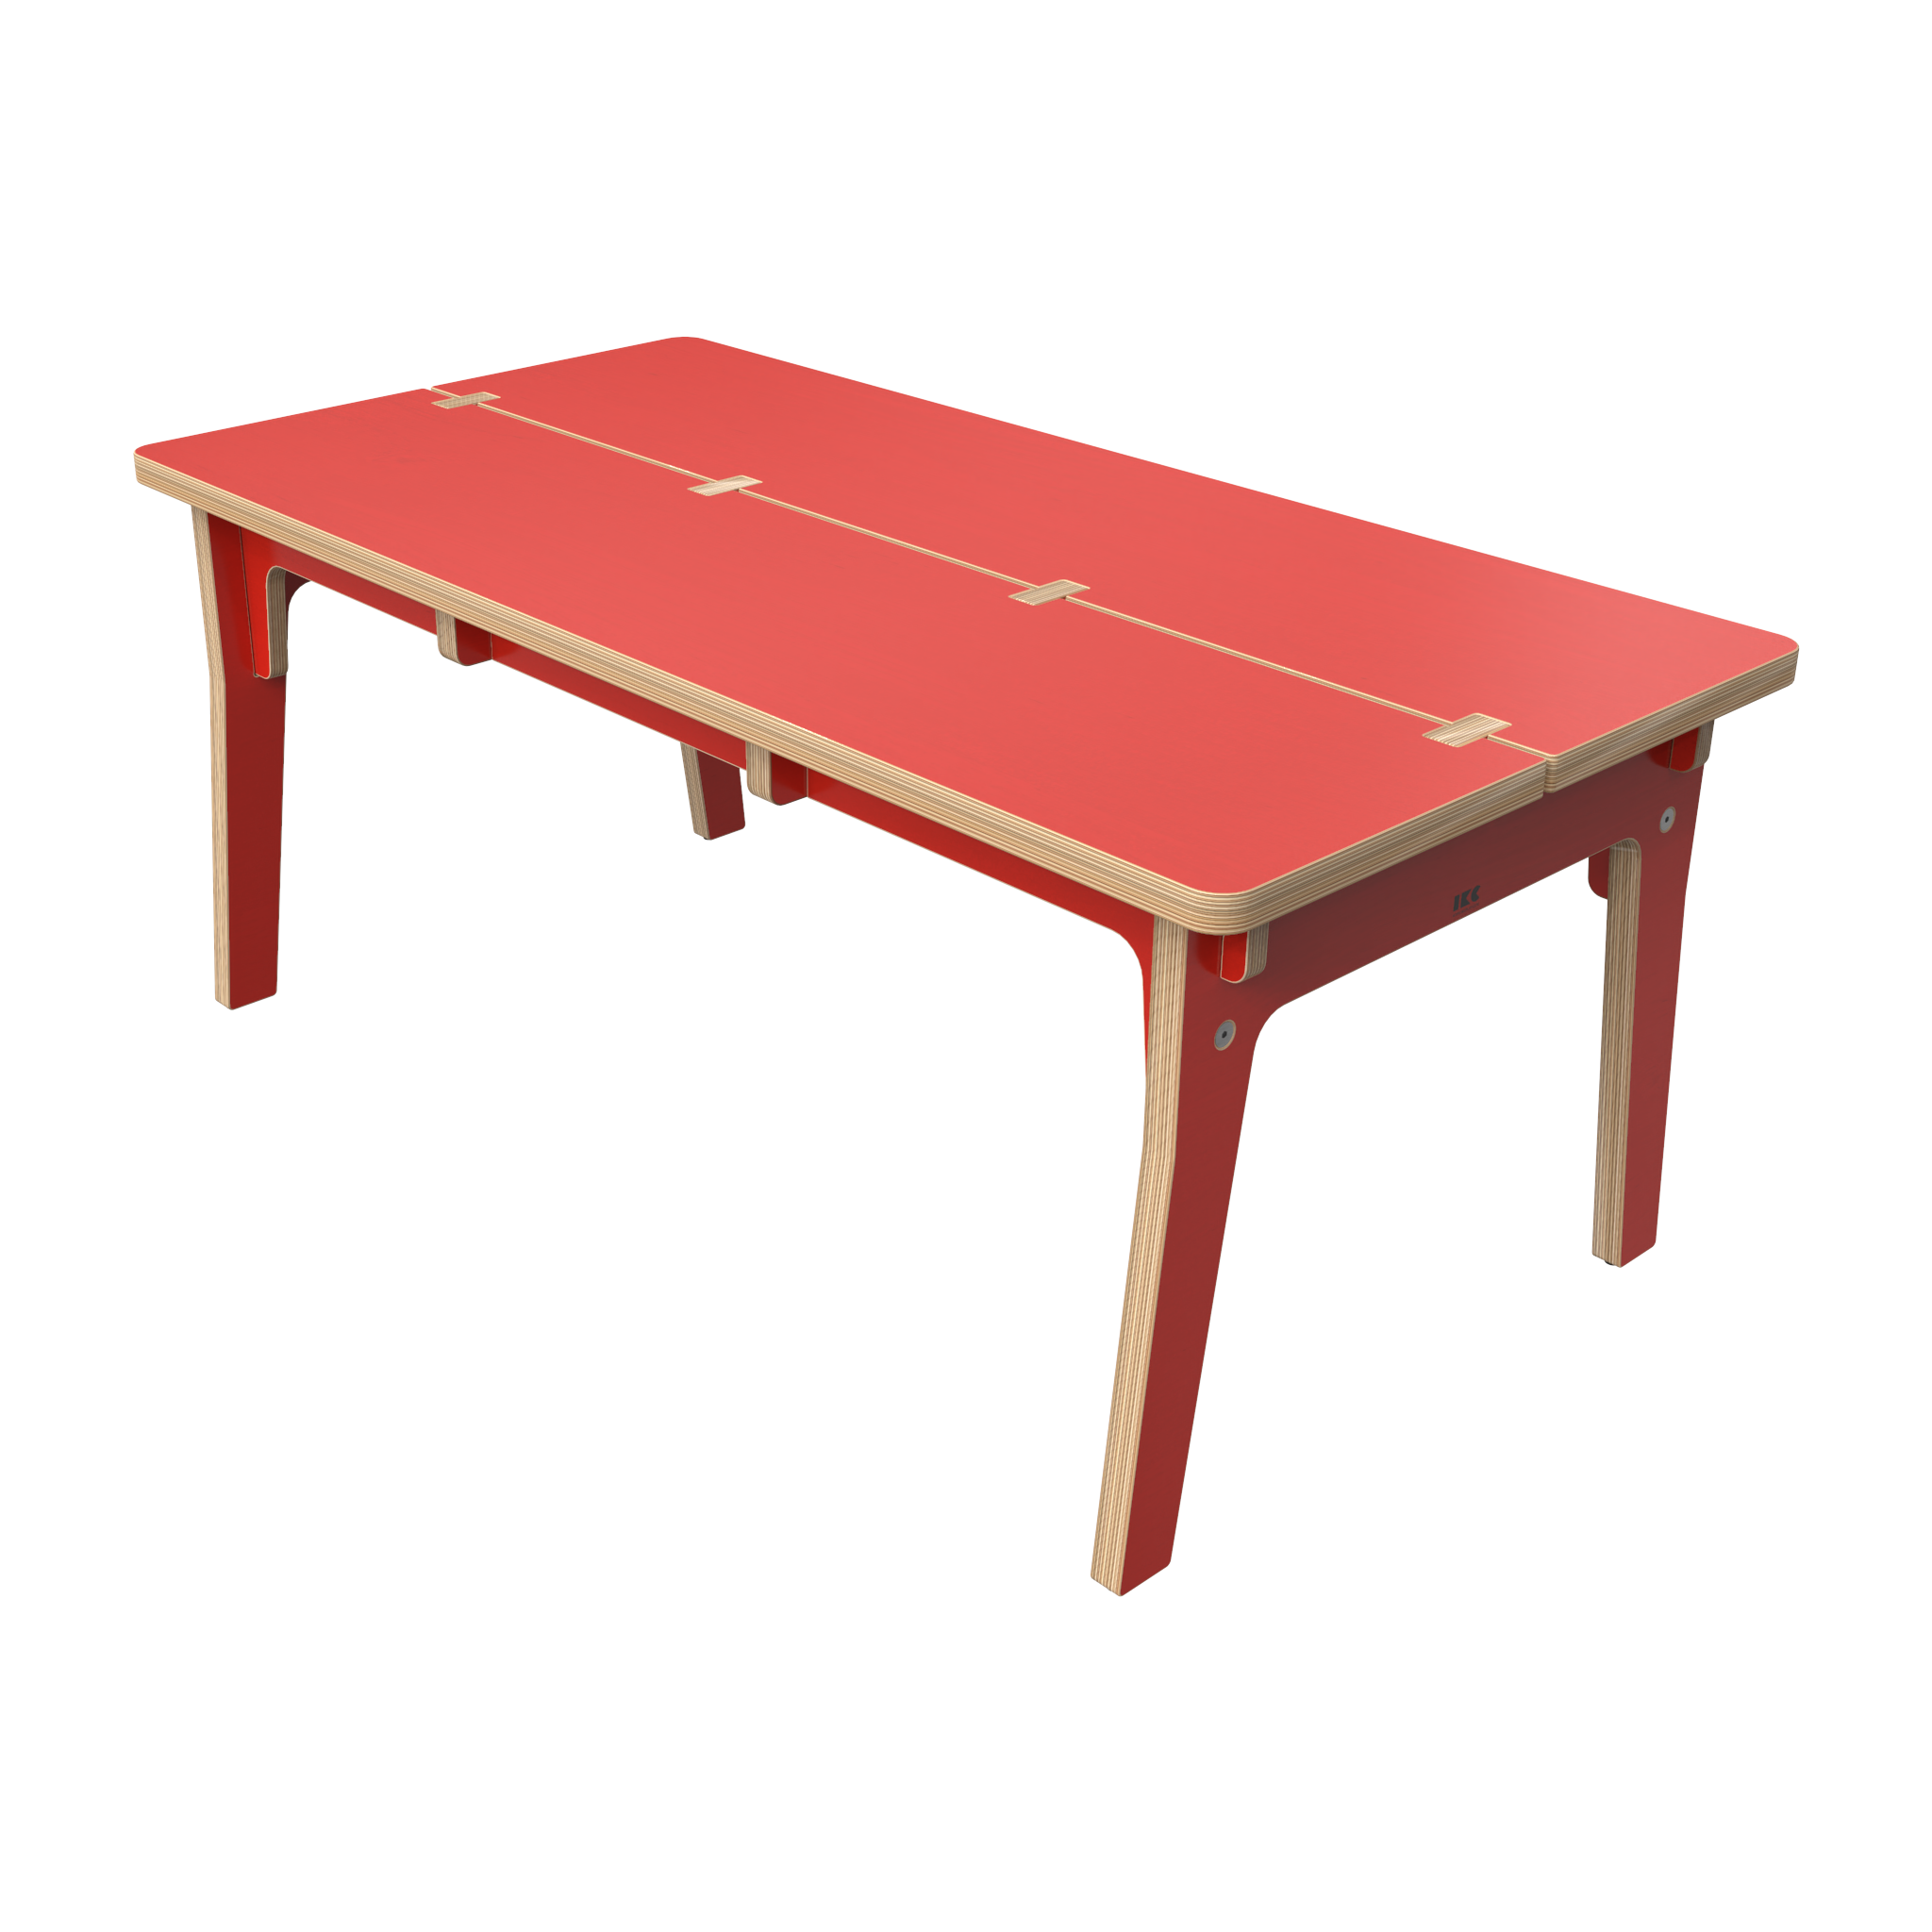 Rode houten tafel voor kinderen voor in een kinderhoek